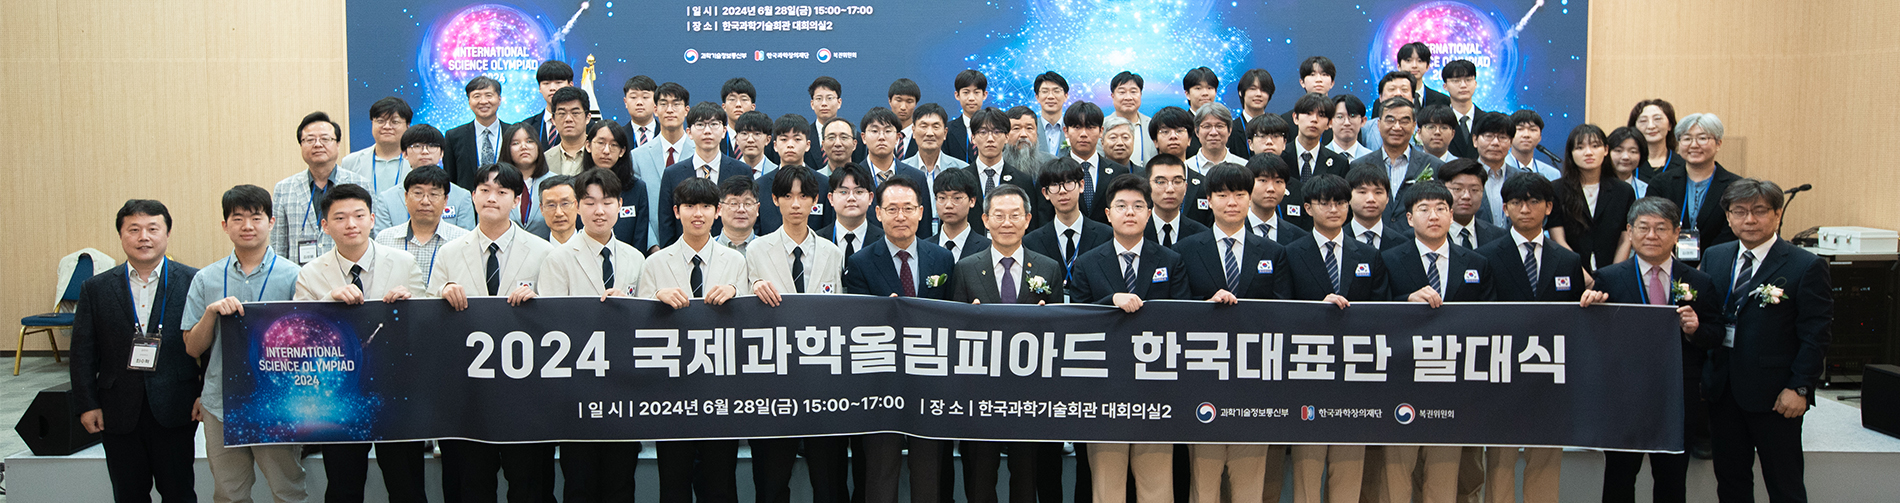 2024 국제과학올림피아드 한국대표단 발대식